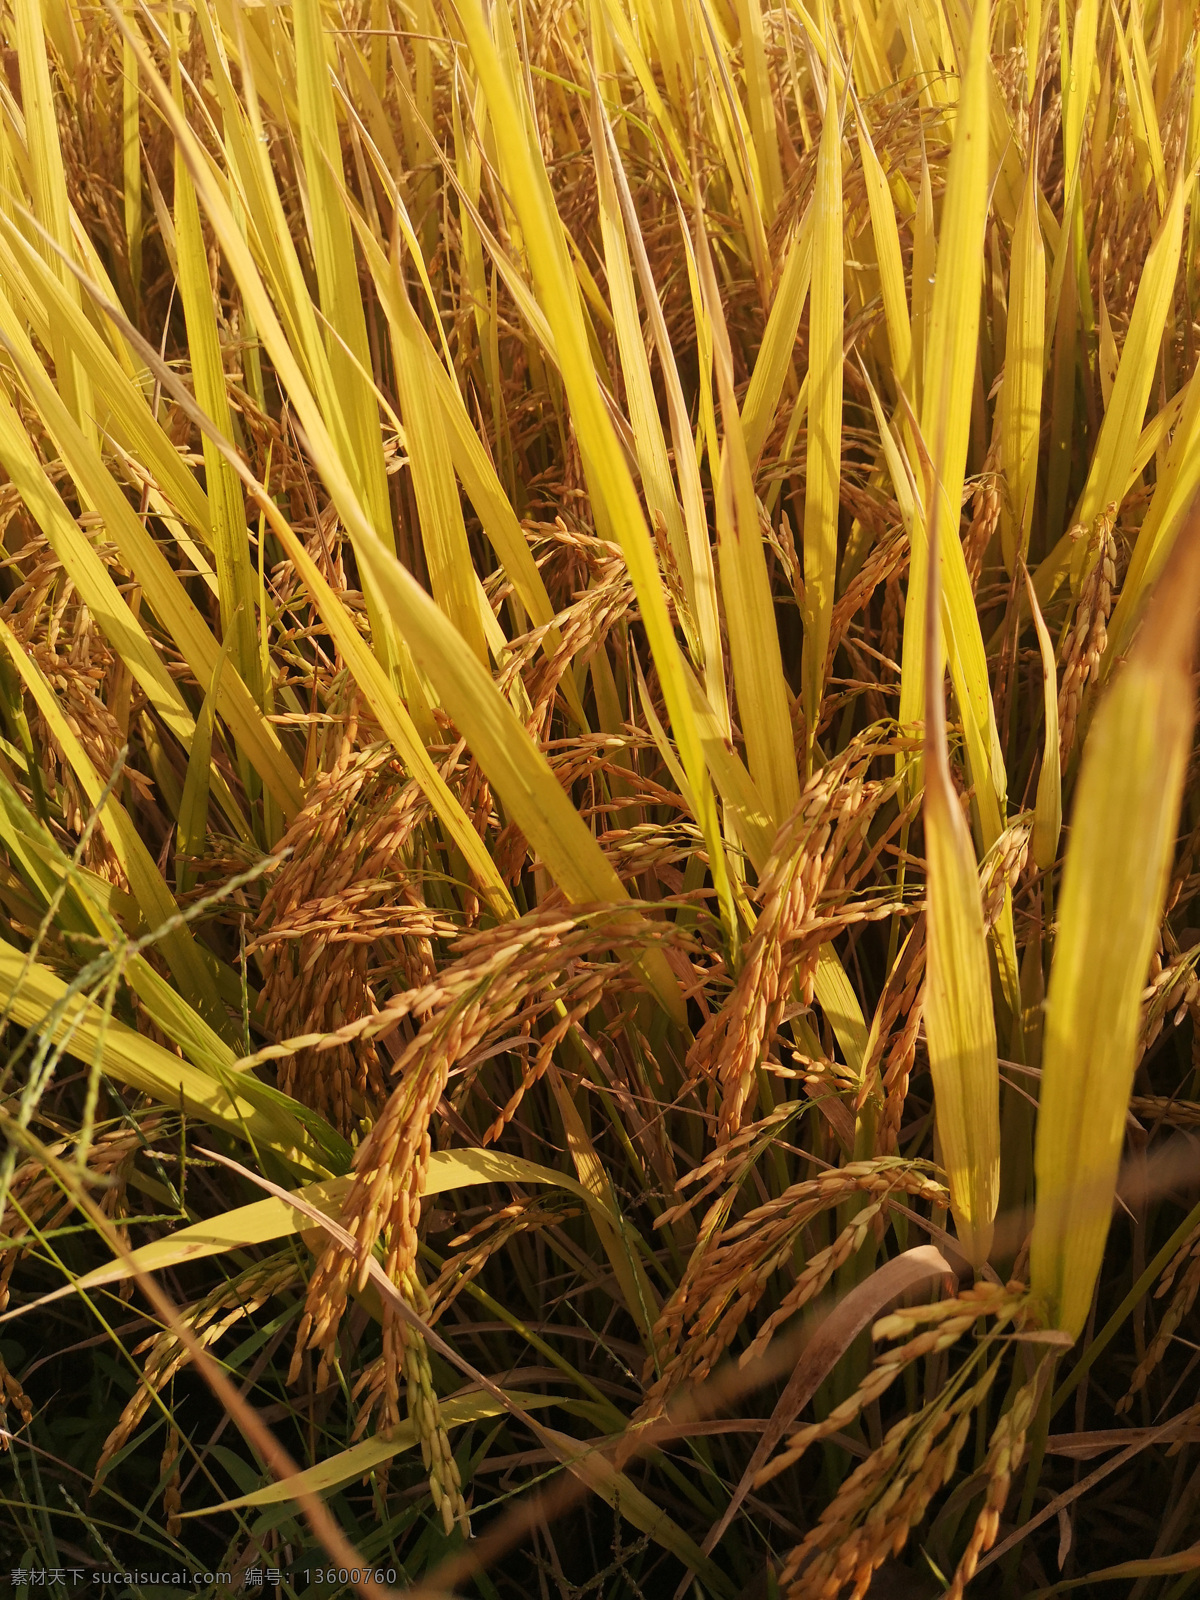 水稻特写 金黄色 庄稼熟了 科普图 收获的季节 自然景观 自然风景